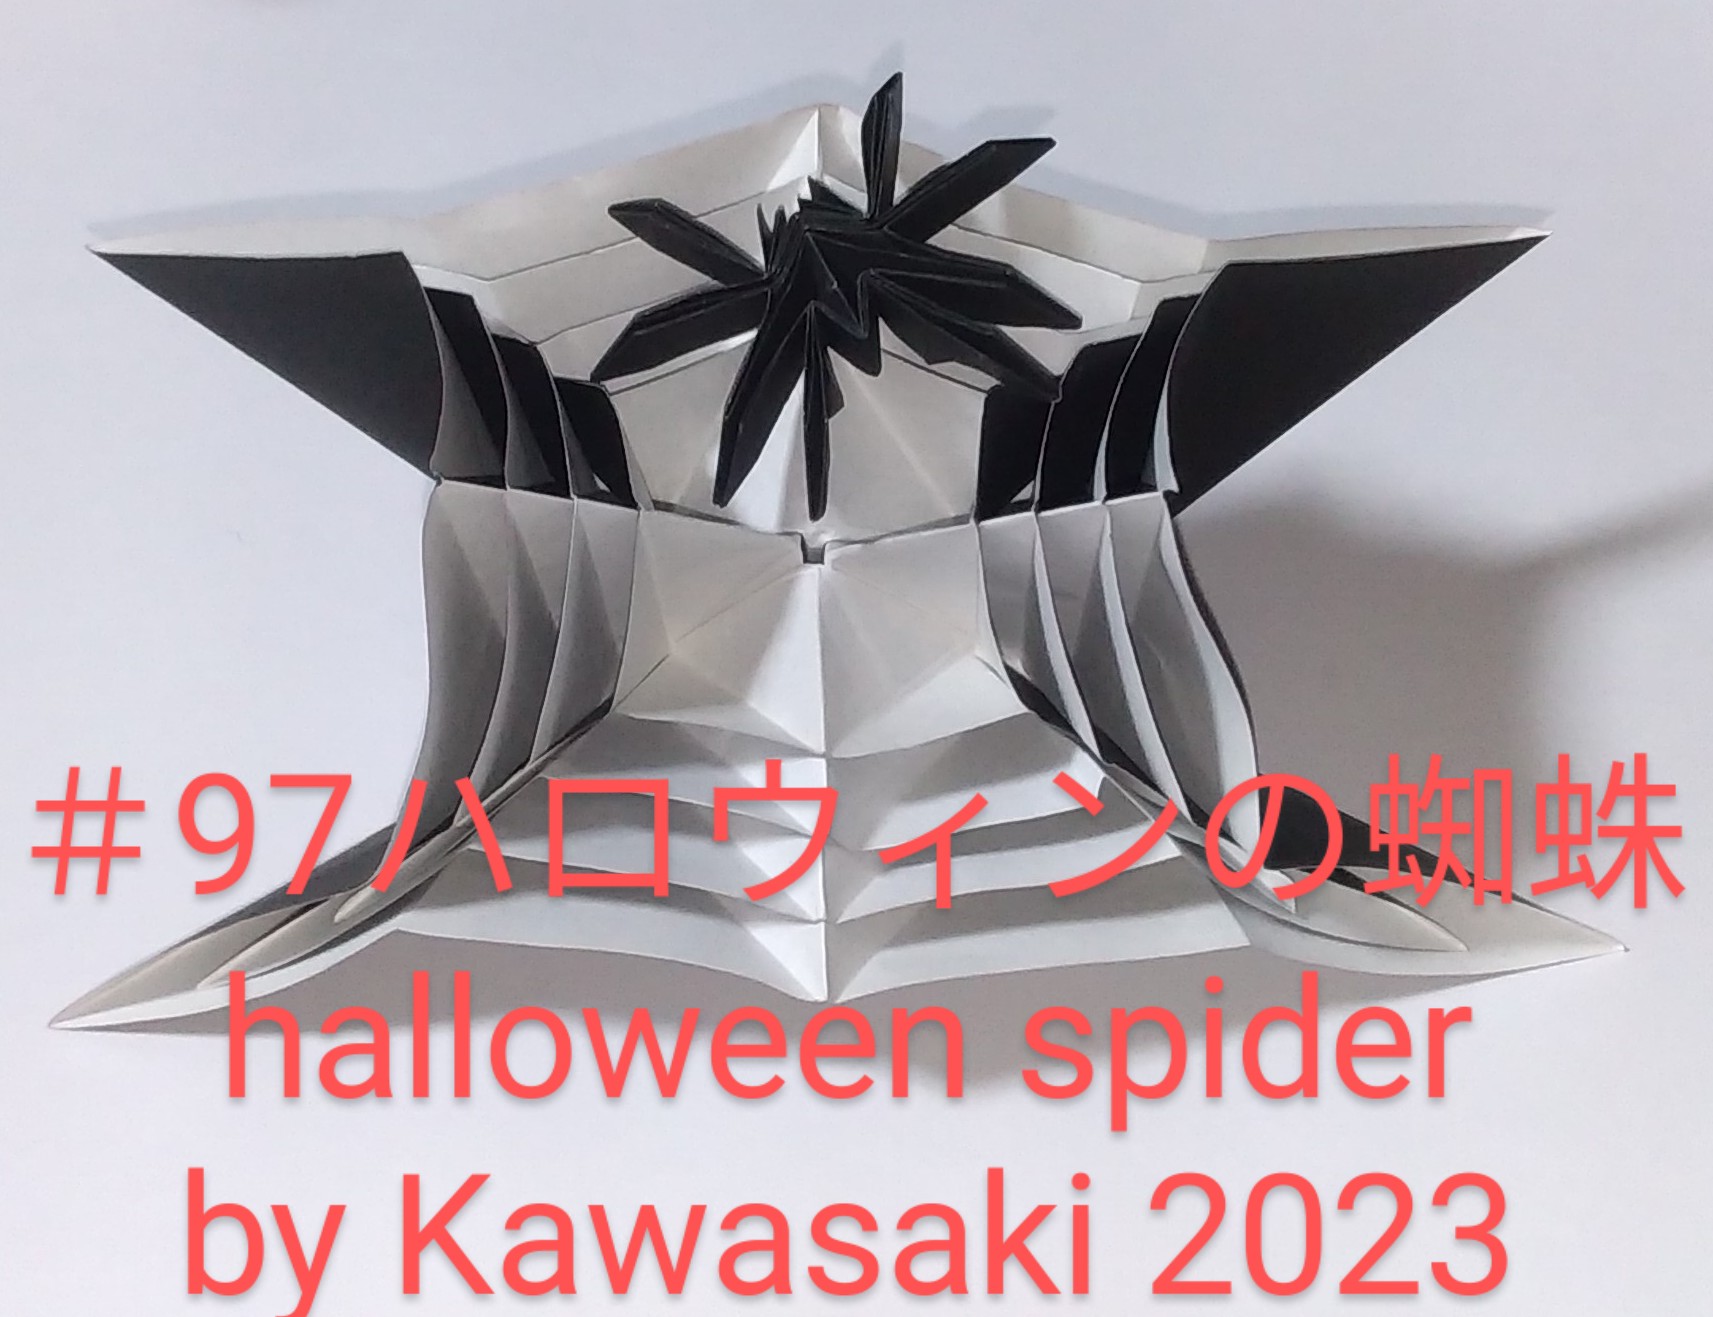 2023/10/16(Mon) 23:07「＃97ハロウィンの蜘蛛 halloween spider（作2023年10月16日22:54）」川崎敏和 T.Kawasaki
（創作者 Author：川崎敏和 T.Kawasaki,　製作者 Folder：川崎敏和 T.Kawasaki ,　出典 Source：2023年川崎敏和折り紙キット＃69）
 ＃96蜘蛛と蜘蛛の巣をすべて黒の色紙で折りました。